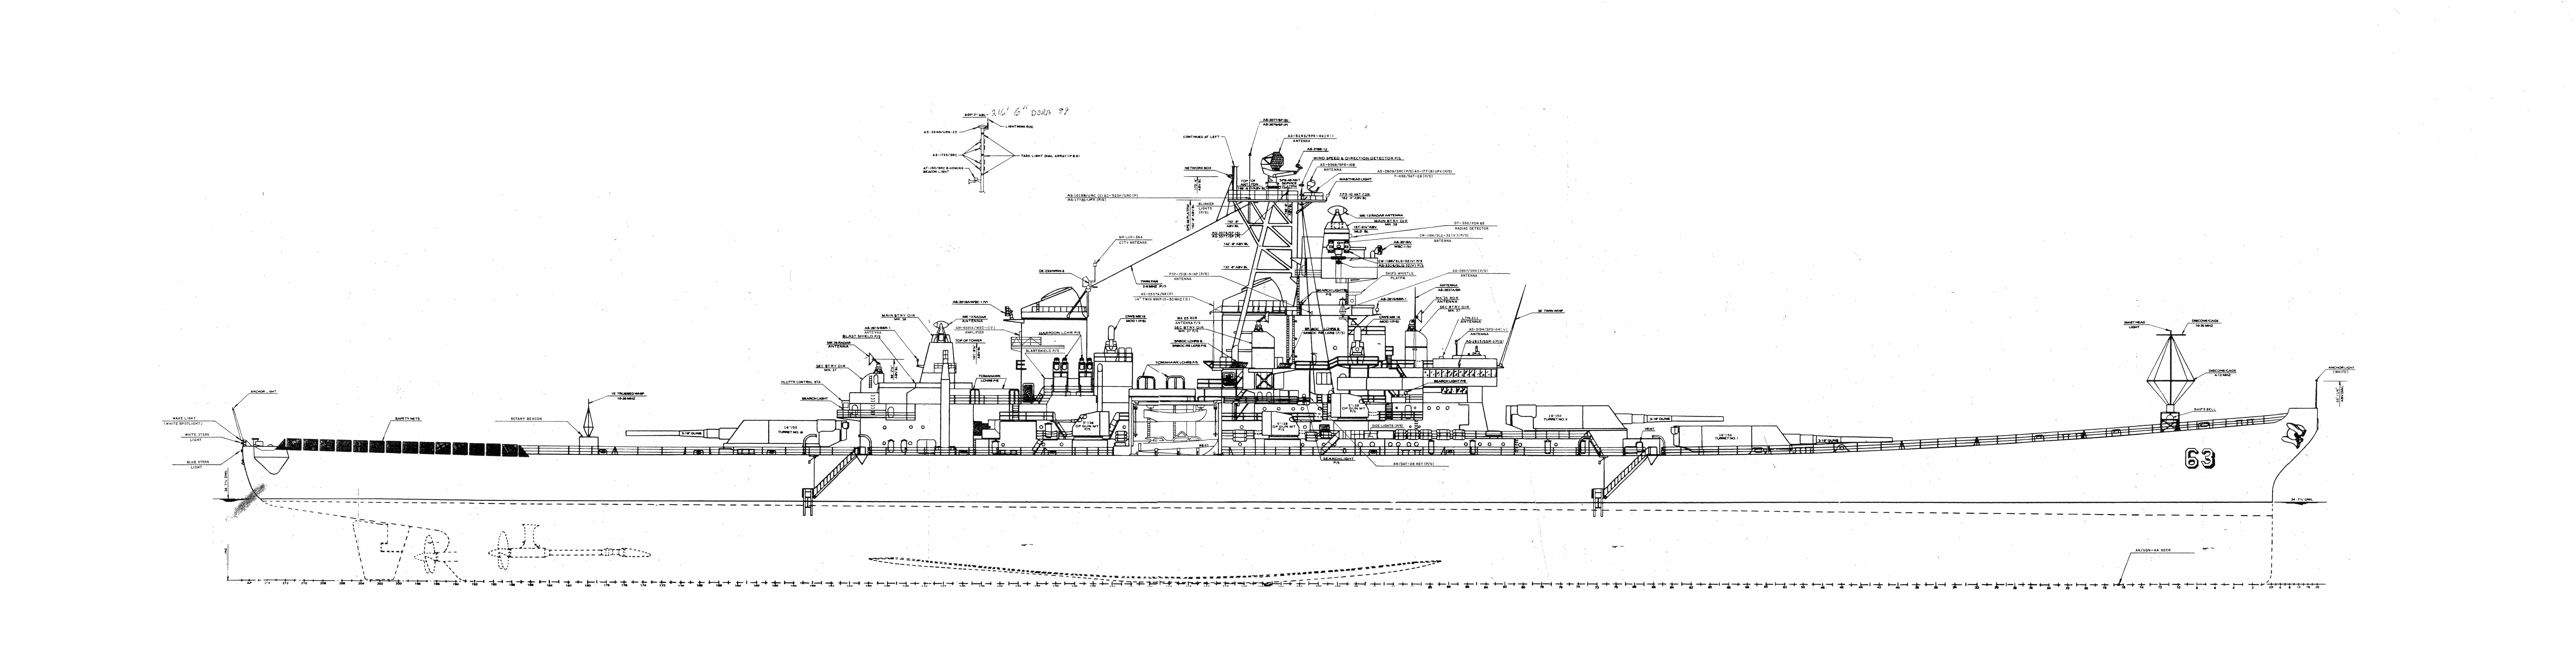 inside a ship blueprint